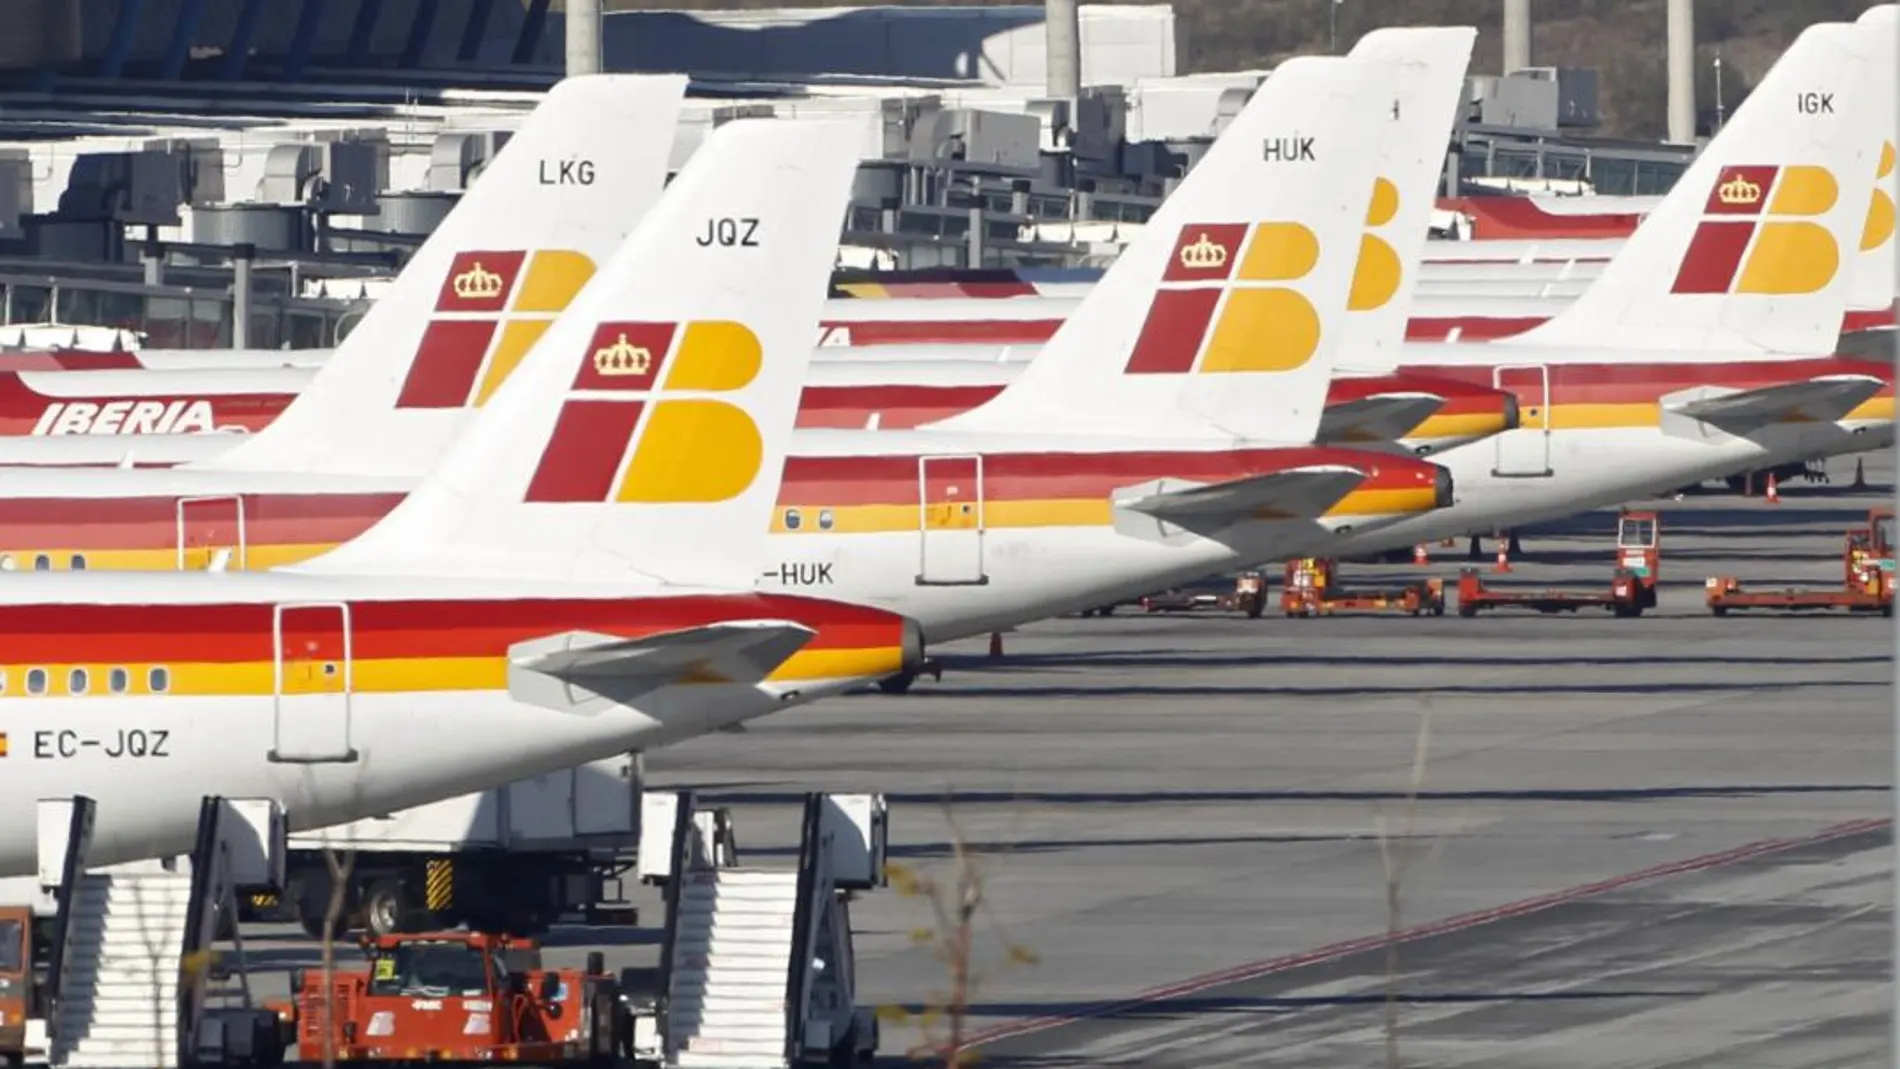 Imagen de varios aviones de Iberia, una de las marcas de la compañía/ Reuters